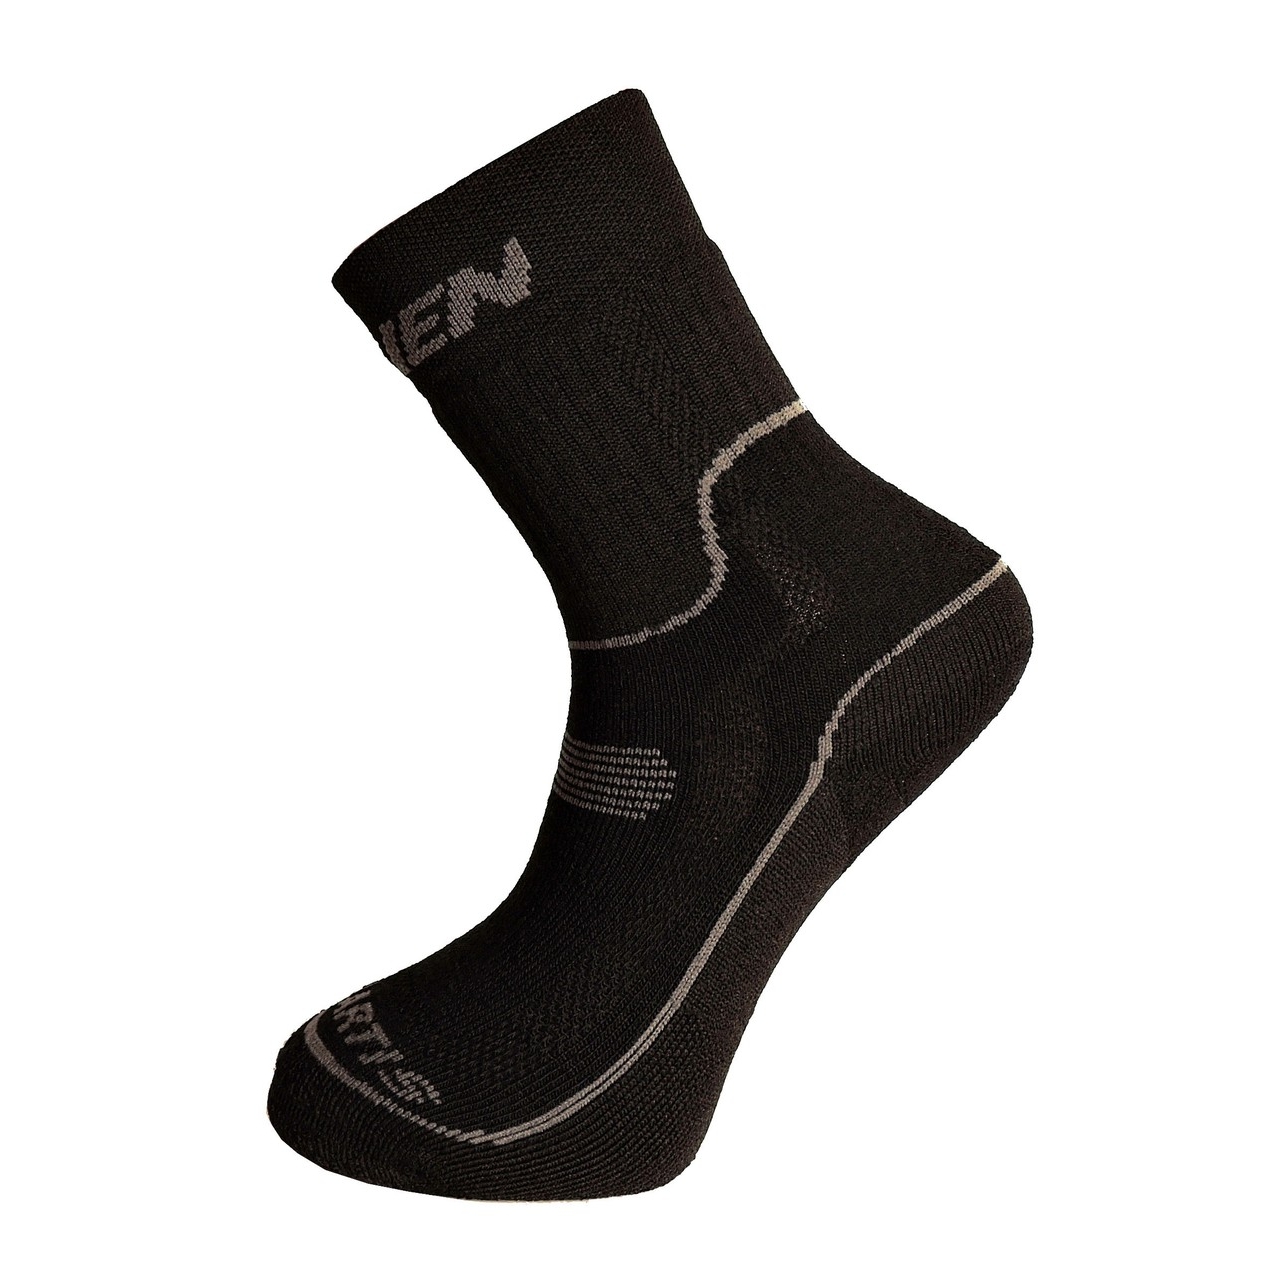 Ponožky Haven Polartis - černé-bílé, 8-9